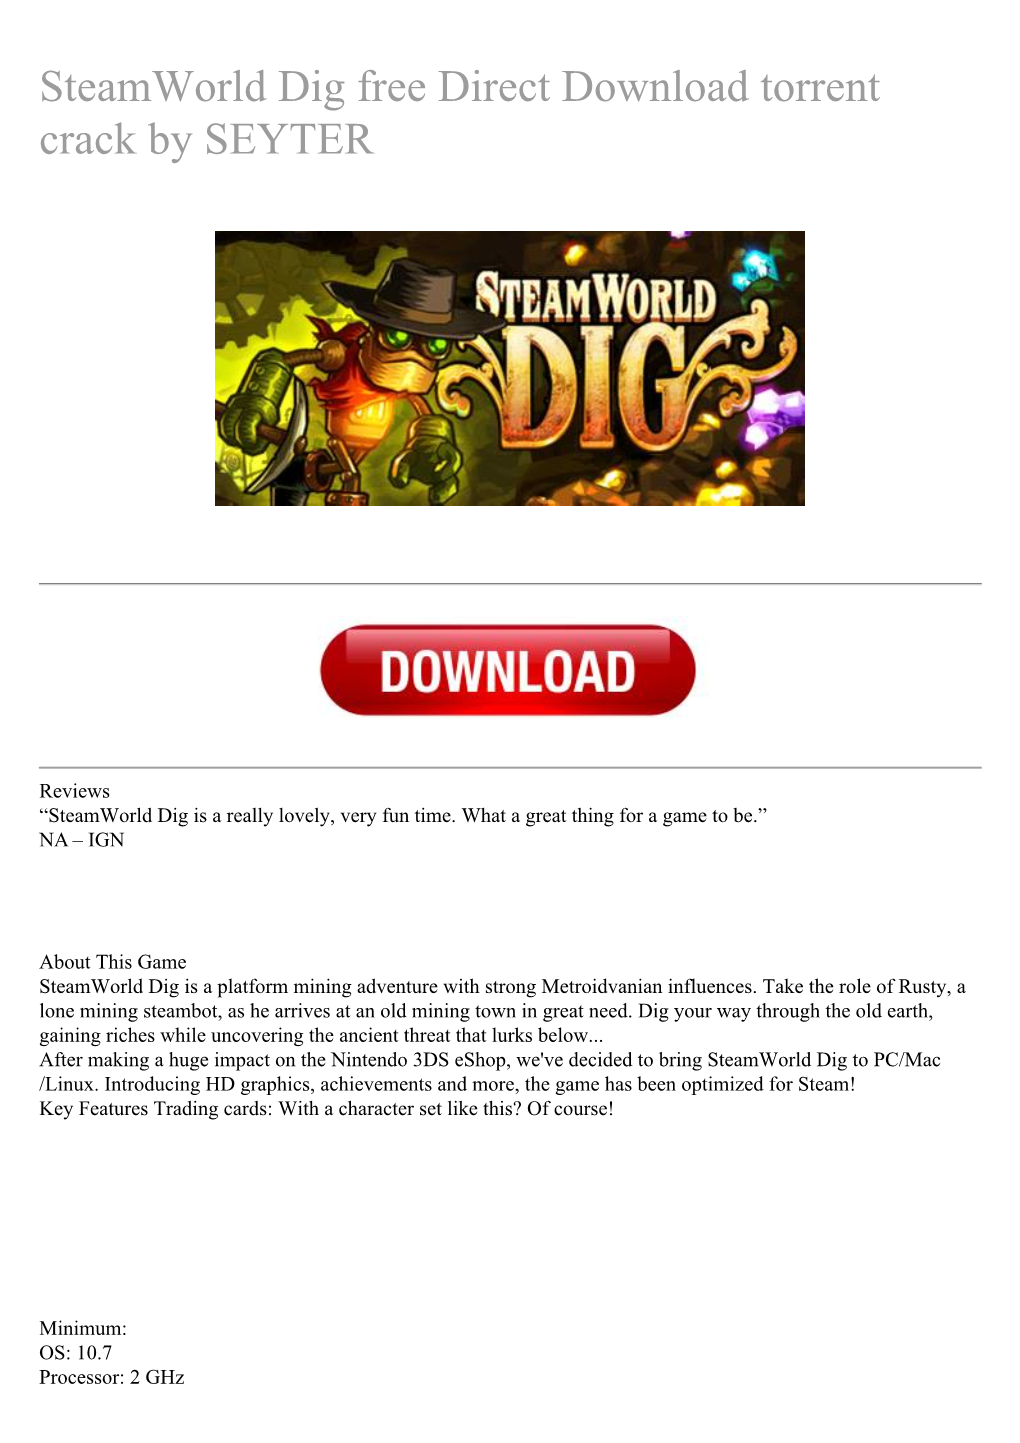 Steamworld Dig Free Direct Download Torrent Crack by SEYTER